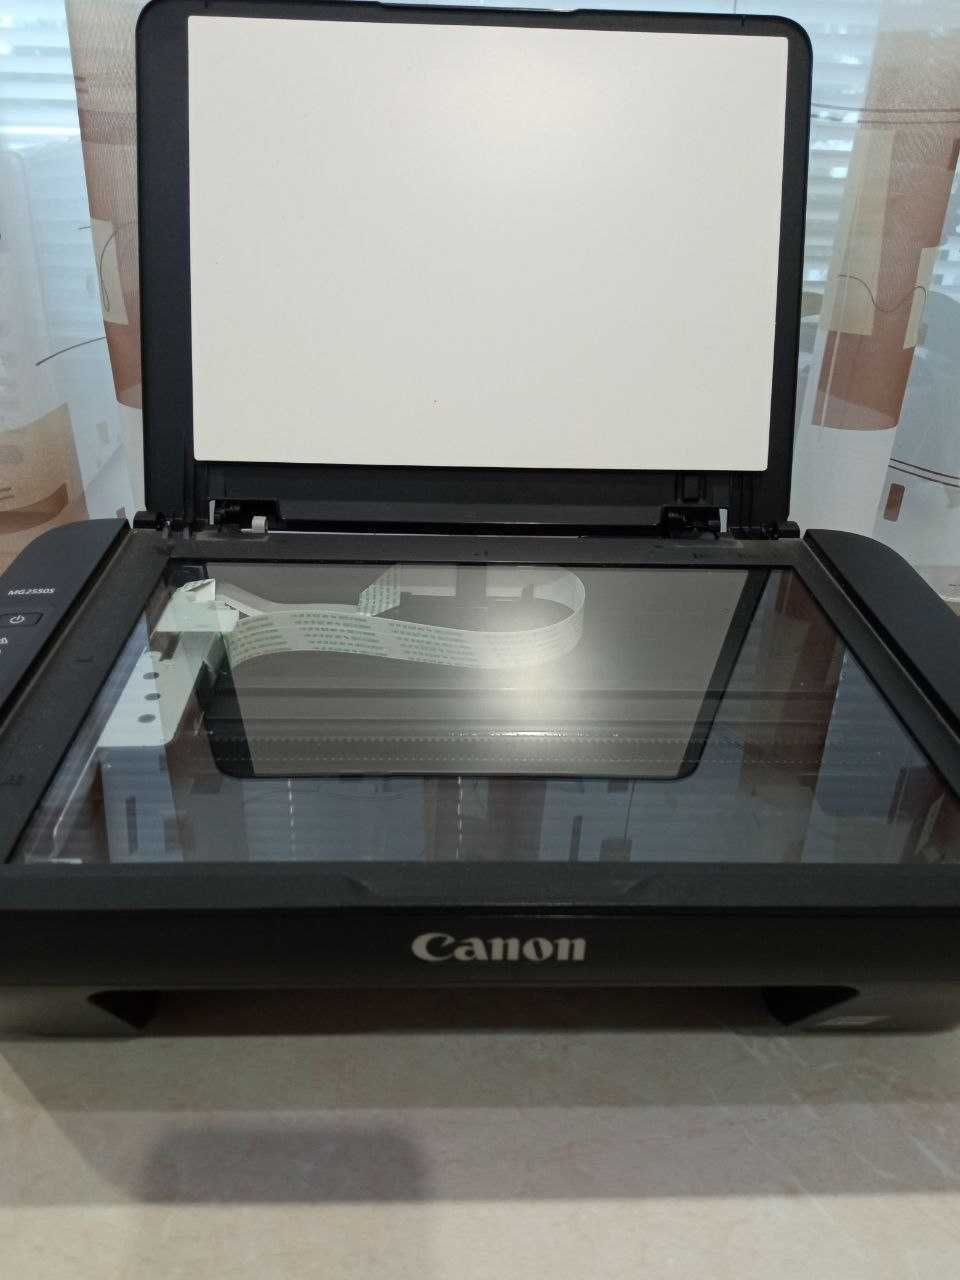 Принтер МФУ Сanon МG2550S на запчастини або відновлення